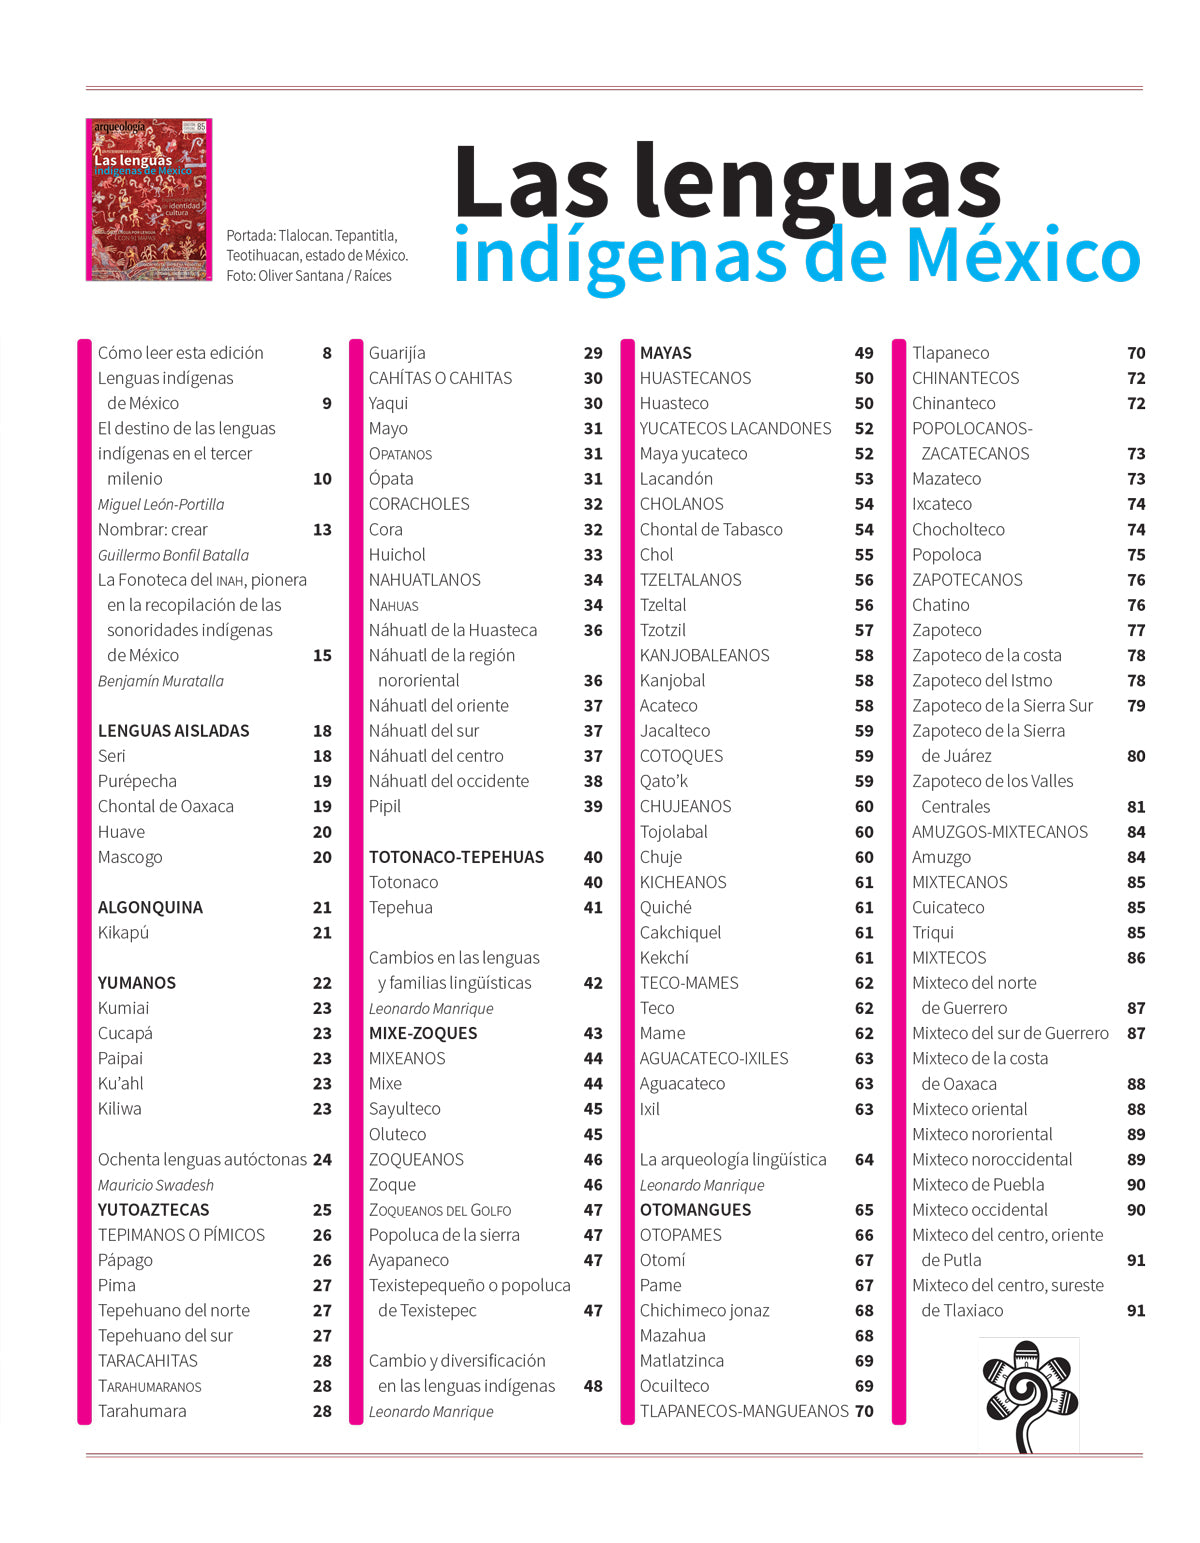 Las Lenguas Indígenas De México Tienda Web Editorial Raíces Sa De Cv 1790